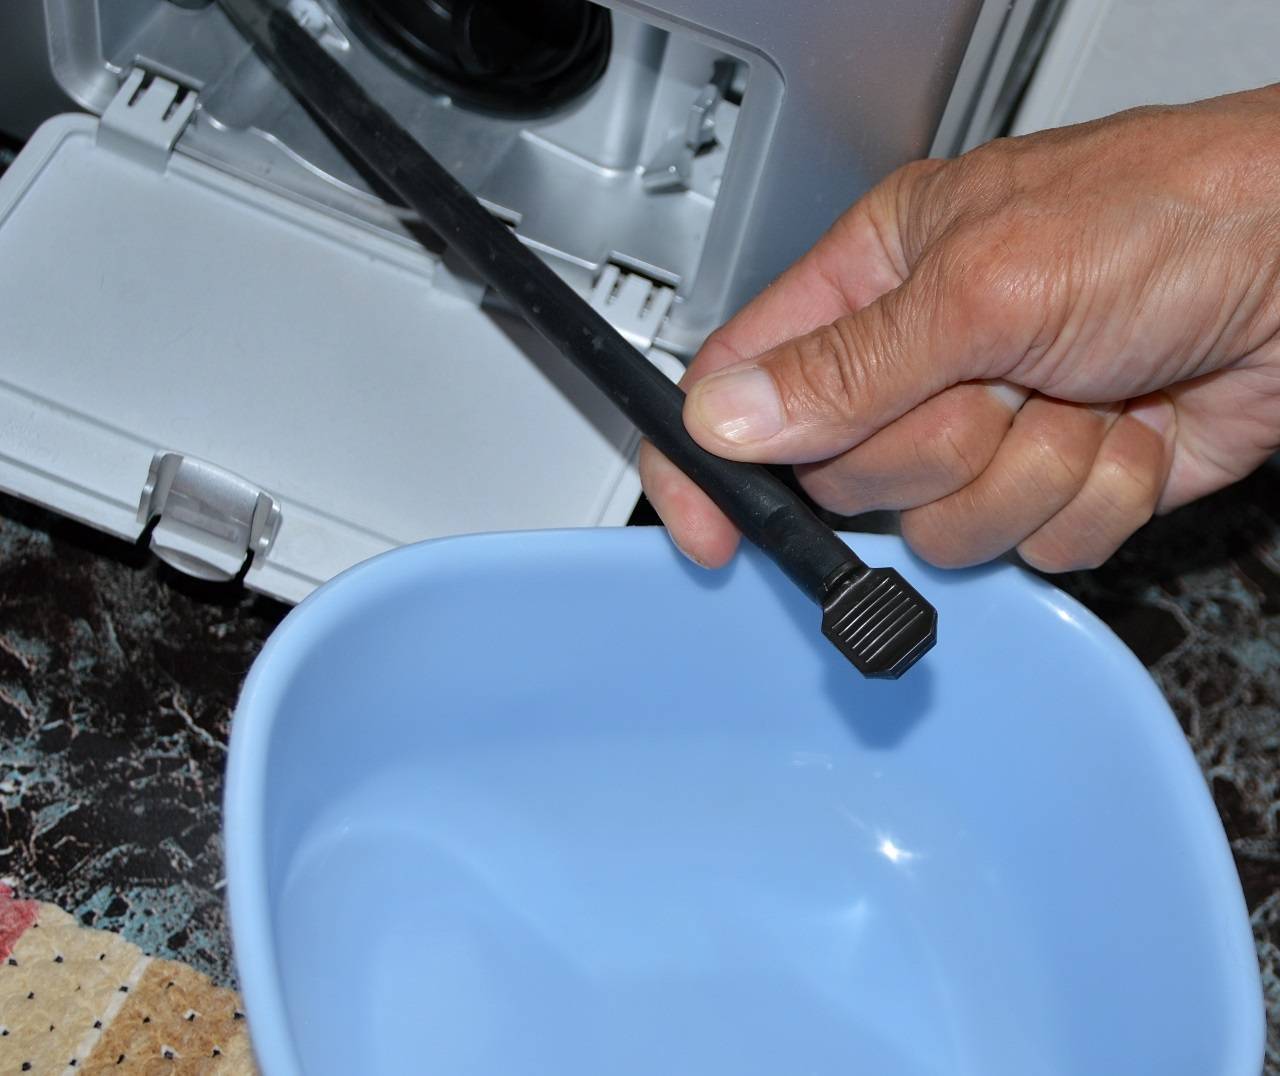 Режим очистки барабана в стиральной машине lg: что это такое, как включить и пользоваться?